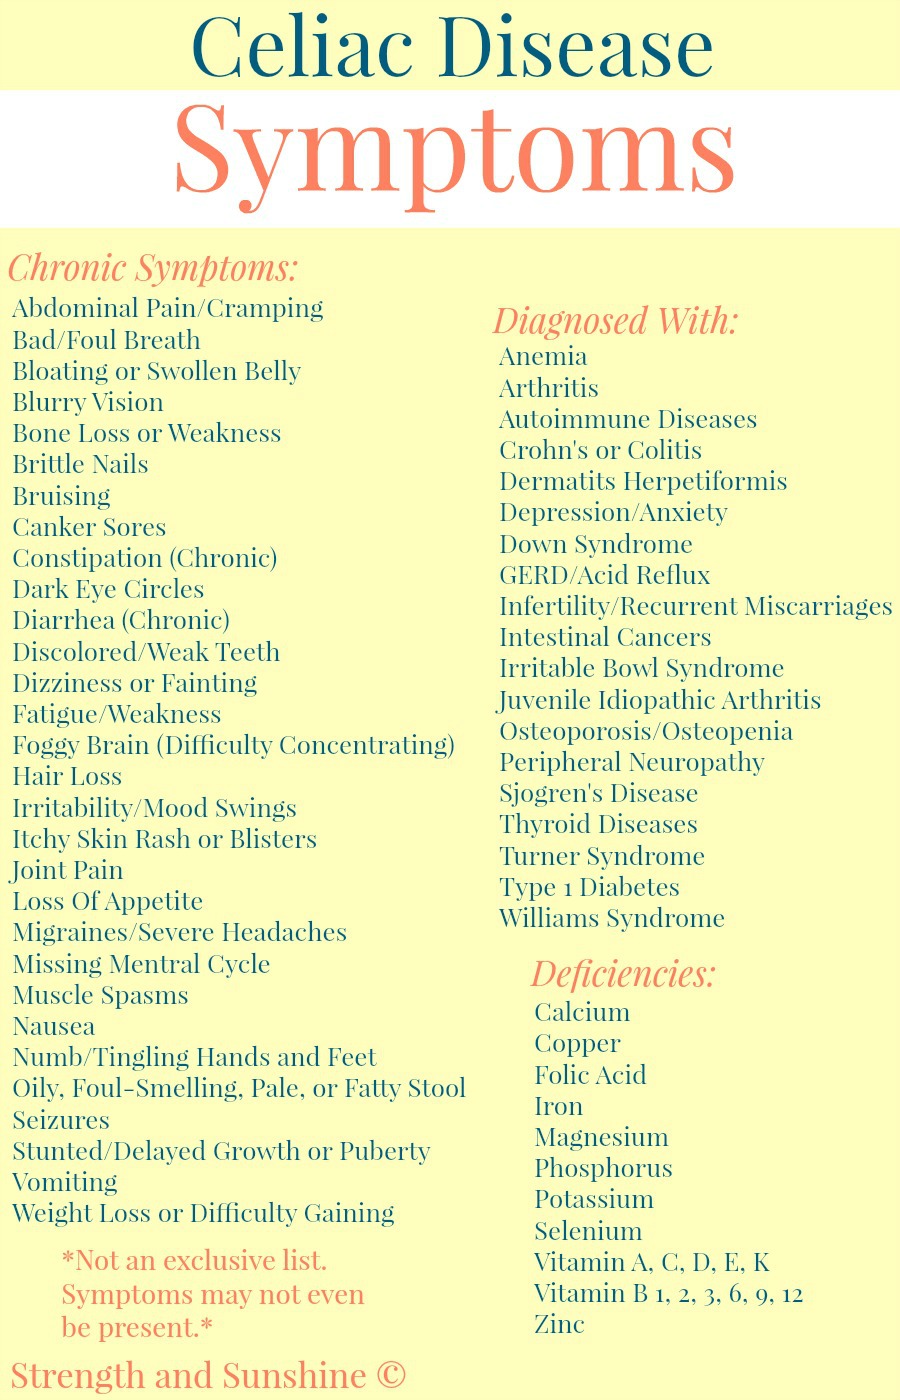 The Signs & Symptoms of Celiac Disease